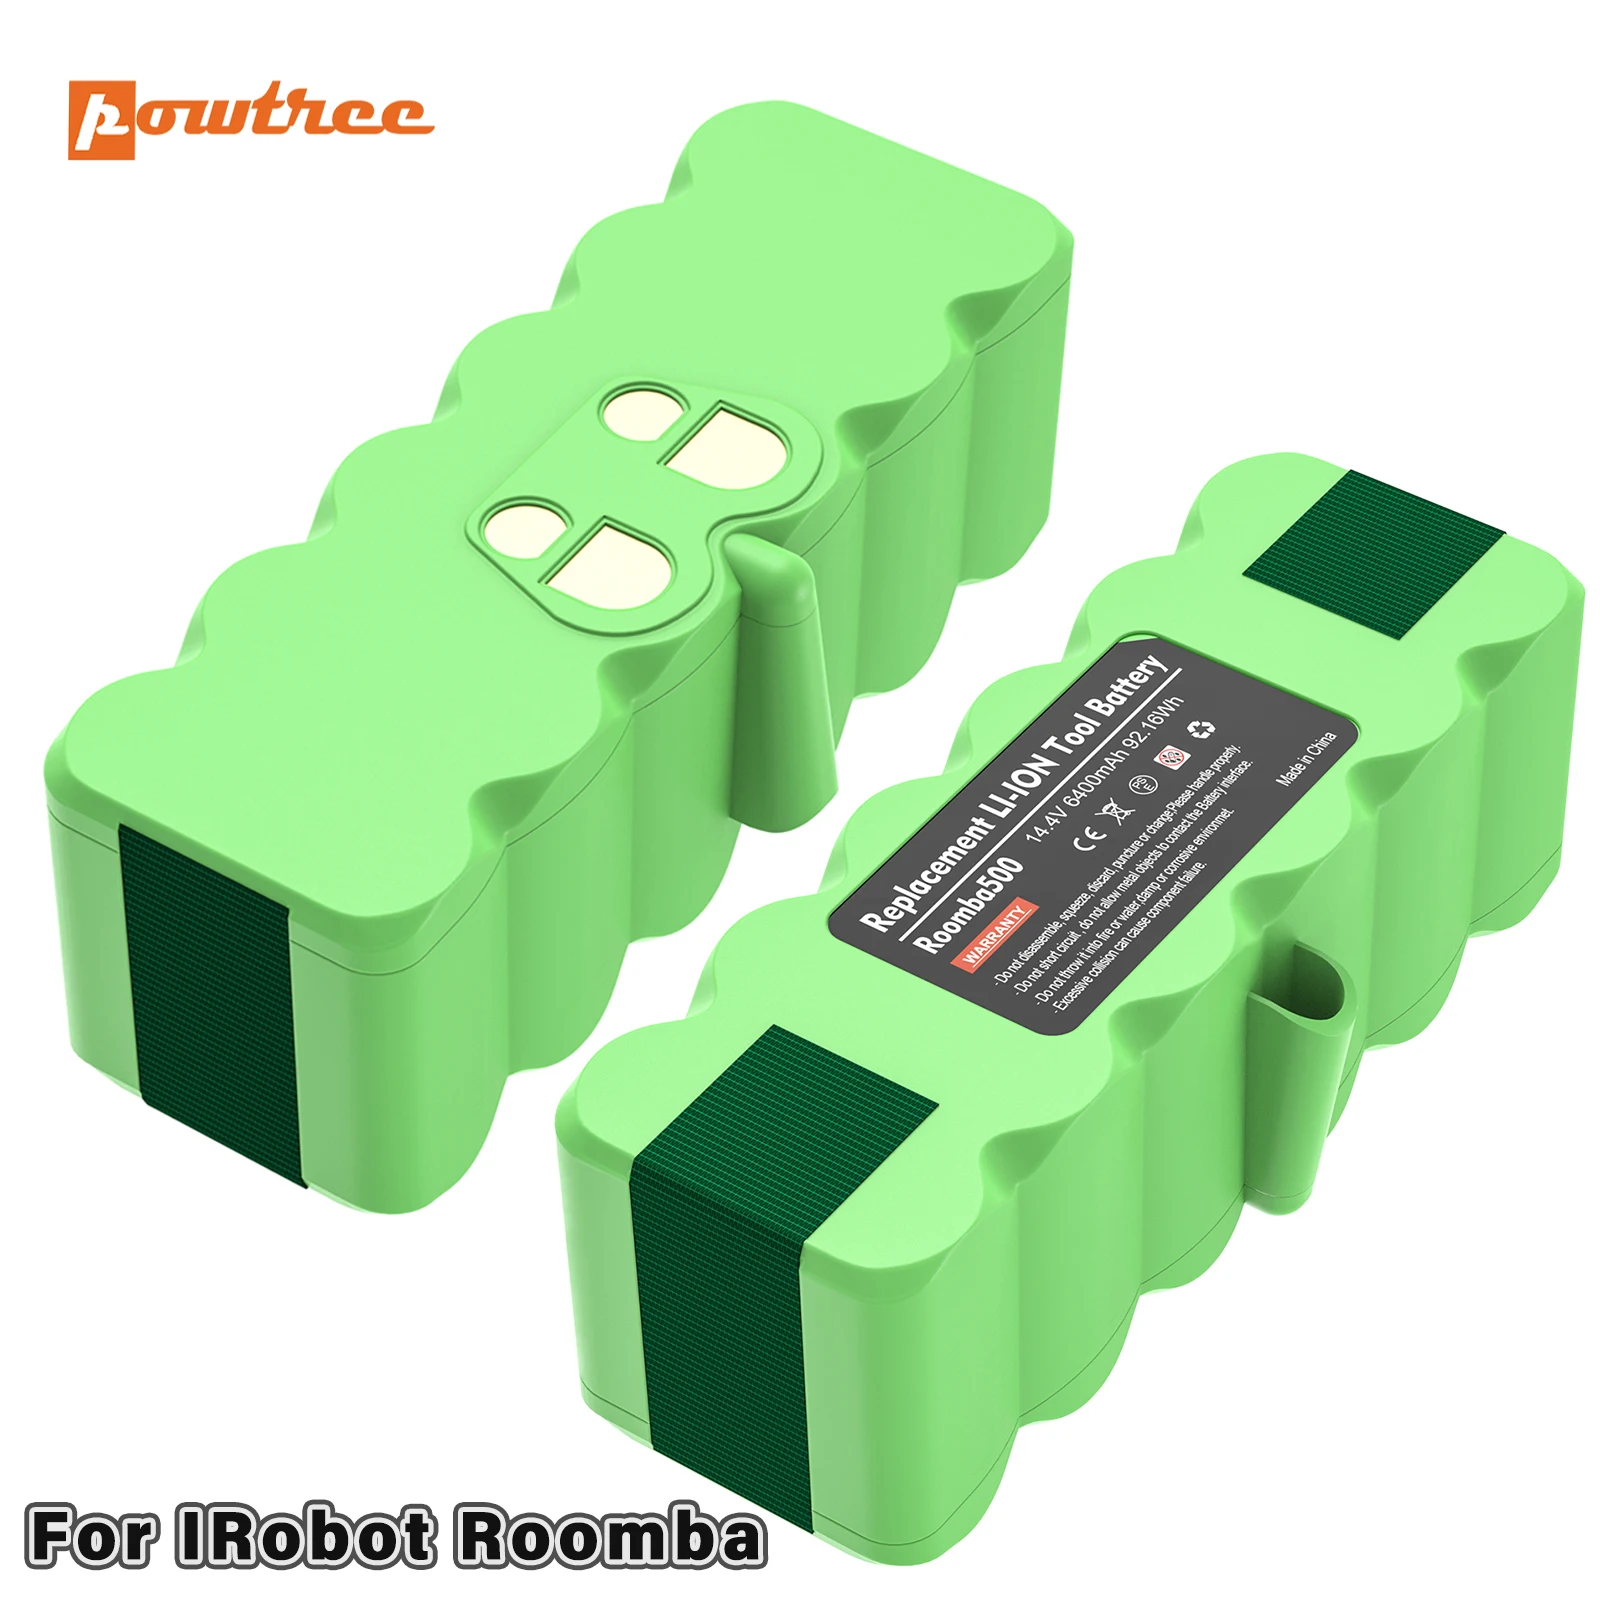 

Powtree 14.4V 6400mAh Vacuum Cleaner Battery For iRobot Roomba 500 600 700 800 900 series 14.4 V 620 650 770 780 580 batteries